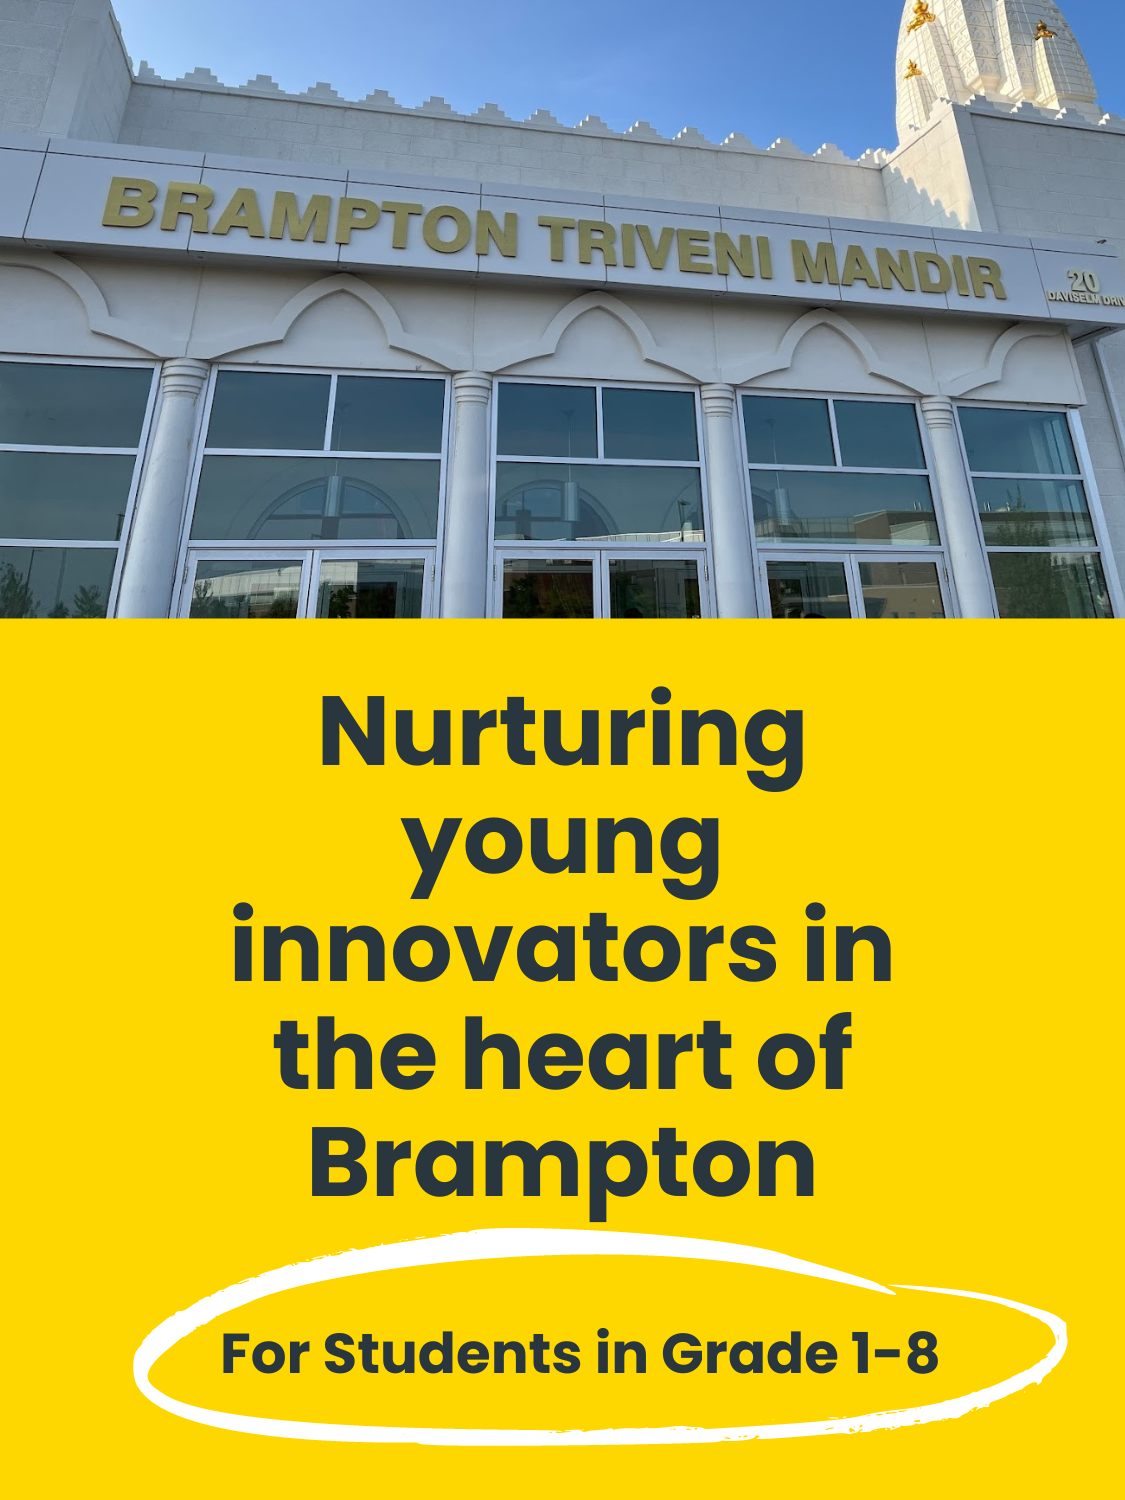 STEM Program for Children in Brampton Ontario_INSPIRELY